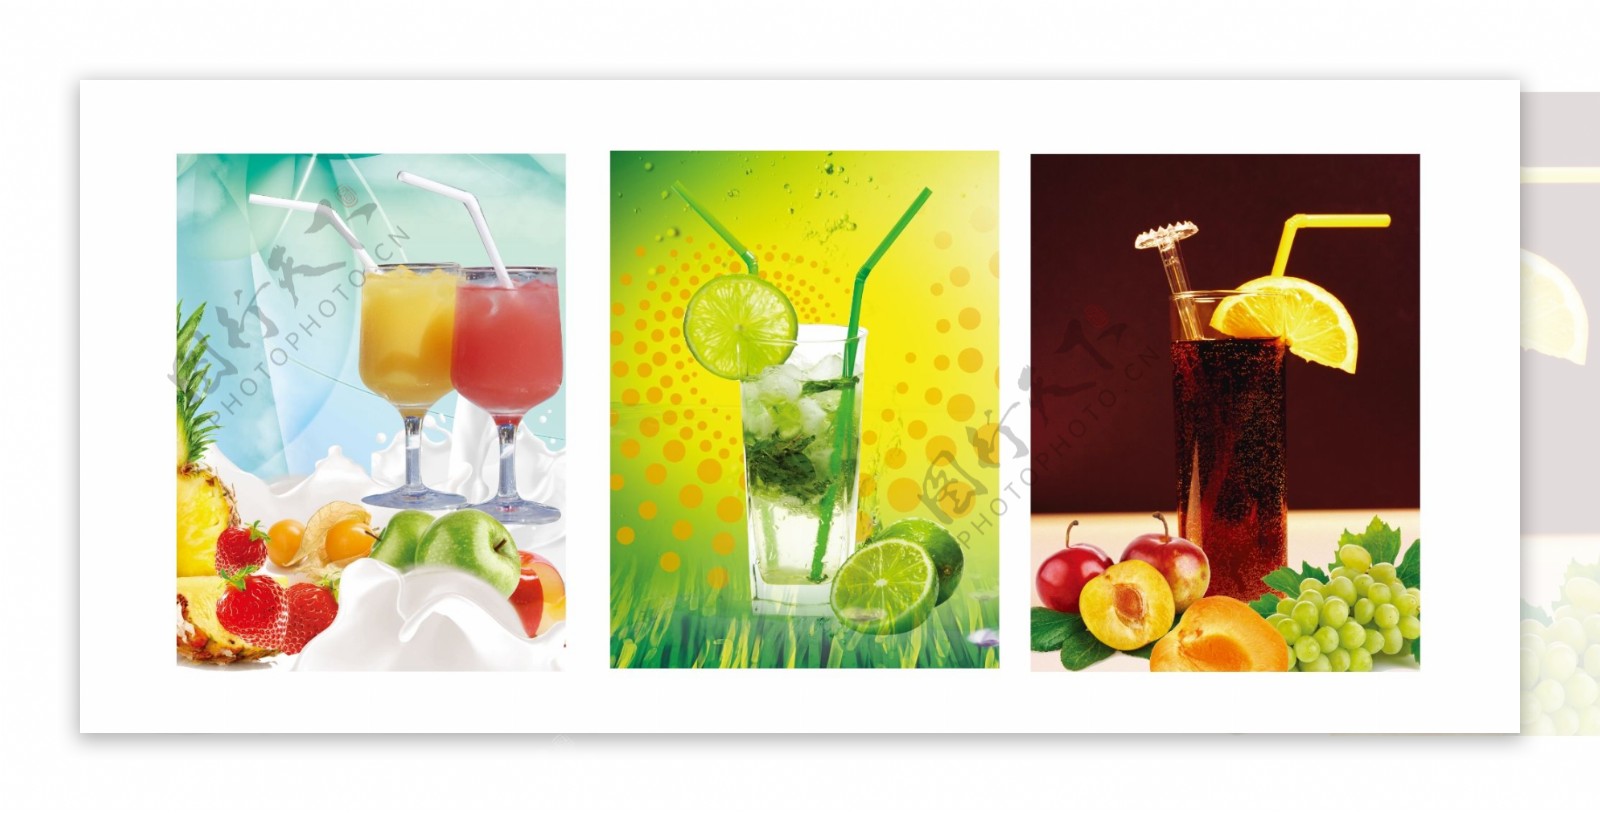 果汁广告图片